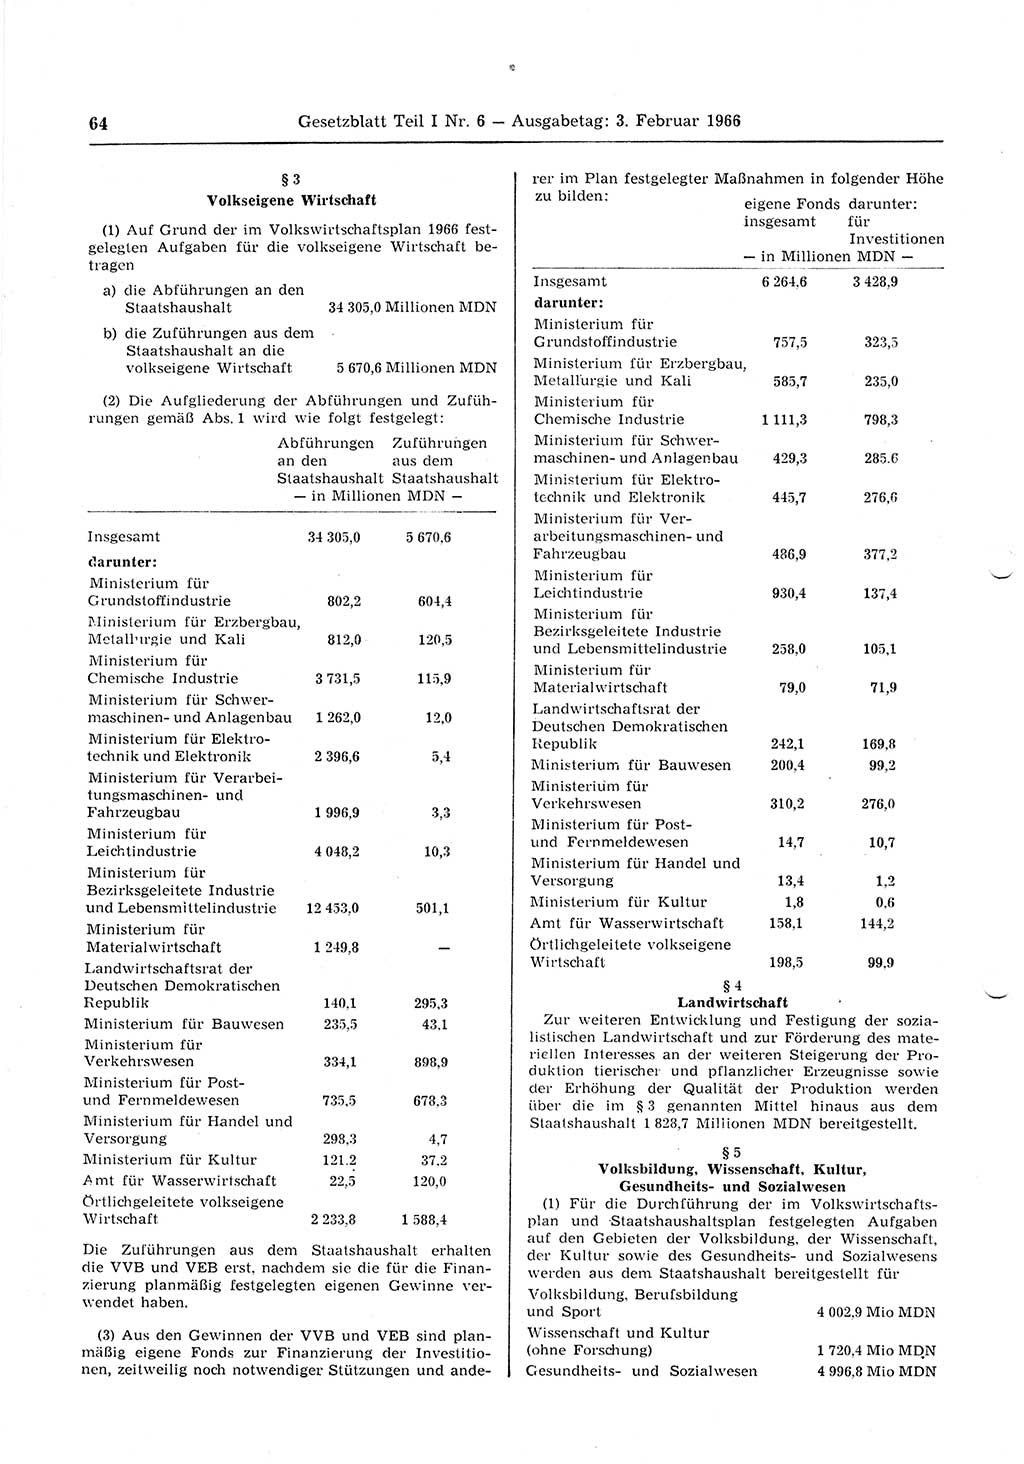 Gesetzblatt (GBl.) der Deutschen Demokratischen Republik (DDR) Teil Ⅰ 1966, Seite 64 (GBl. DDR Ⅰ 1966, S. 64)